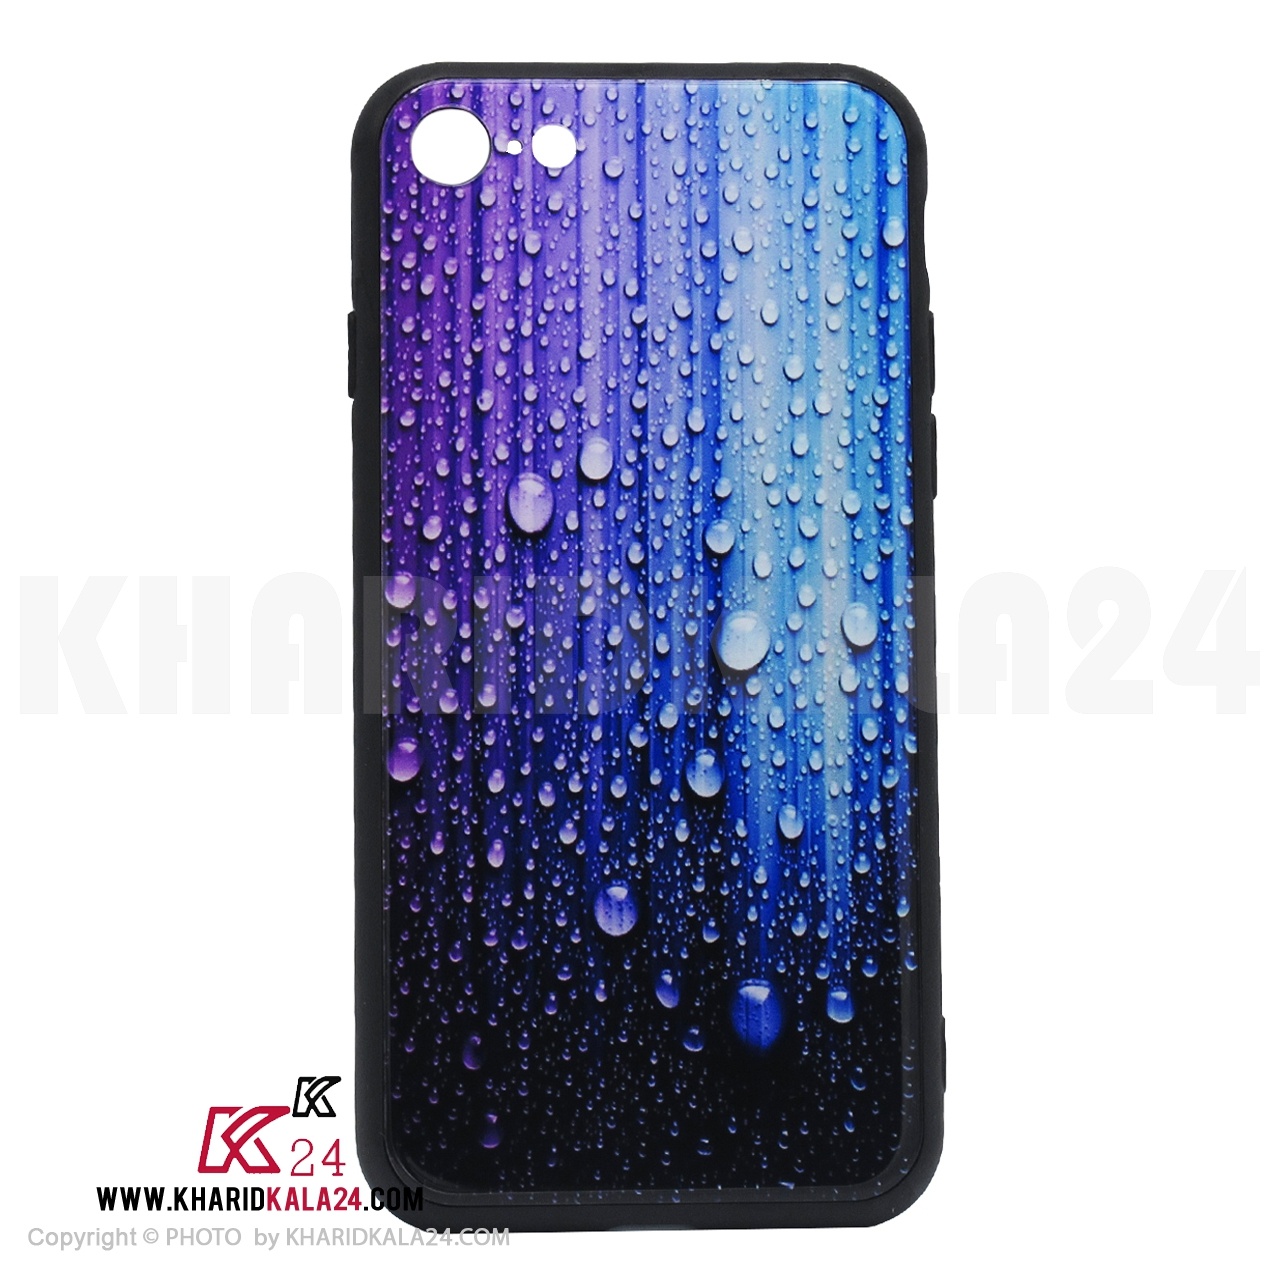 کاور KK24 مدل باران مناسب برای گوشی موبایل آیفون 8